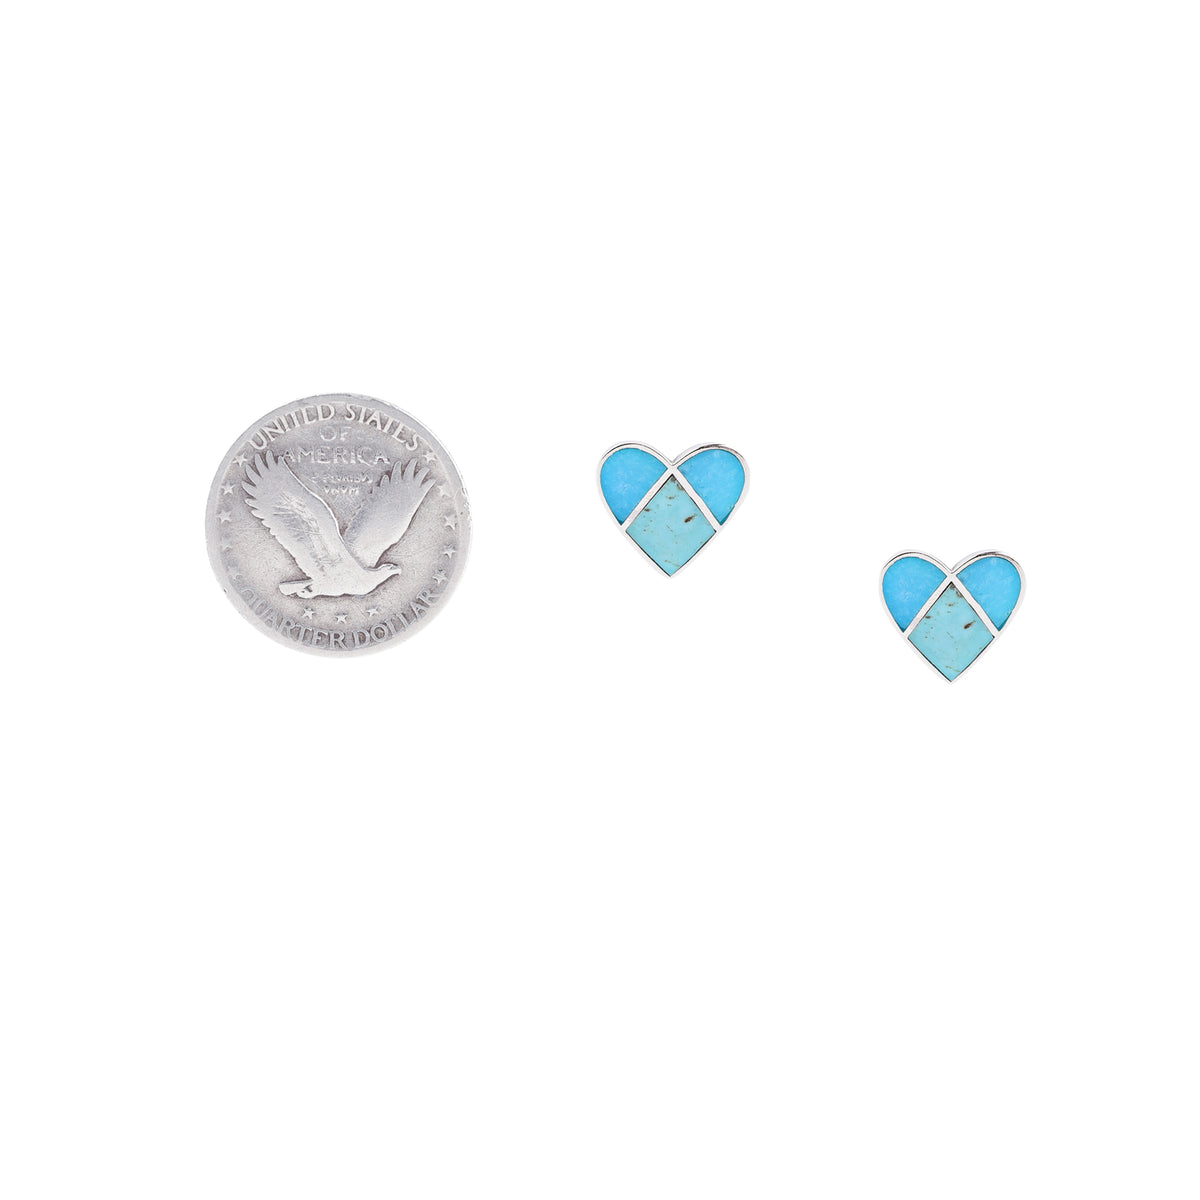 Corazon Inlayed Turquoise Heart Earrings | COWGIRL Heirloom by Peyote Bird